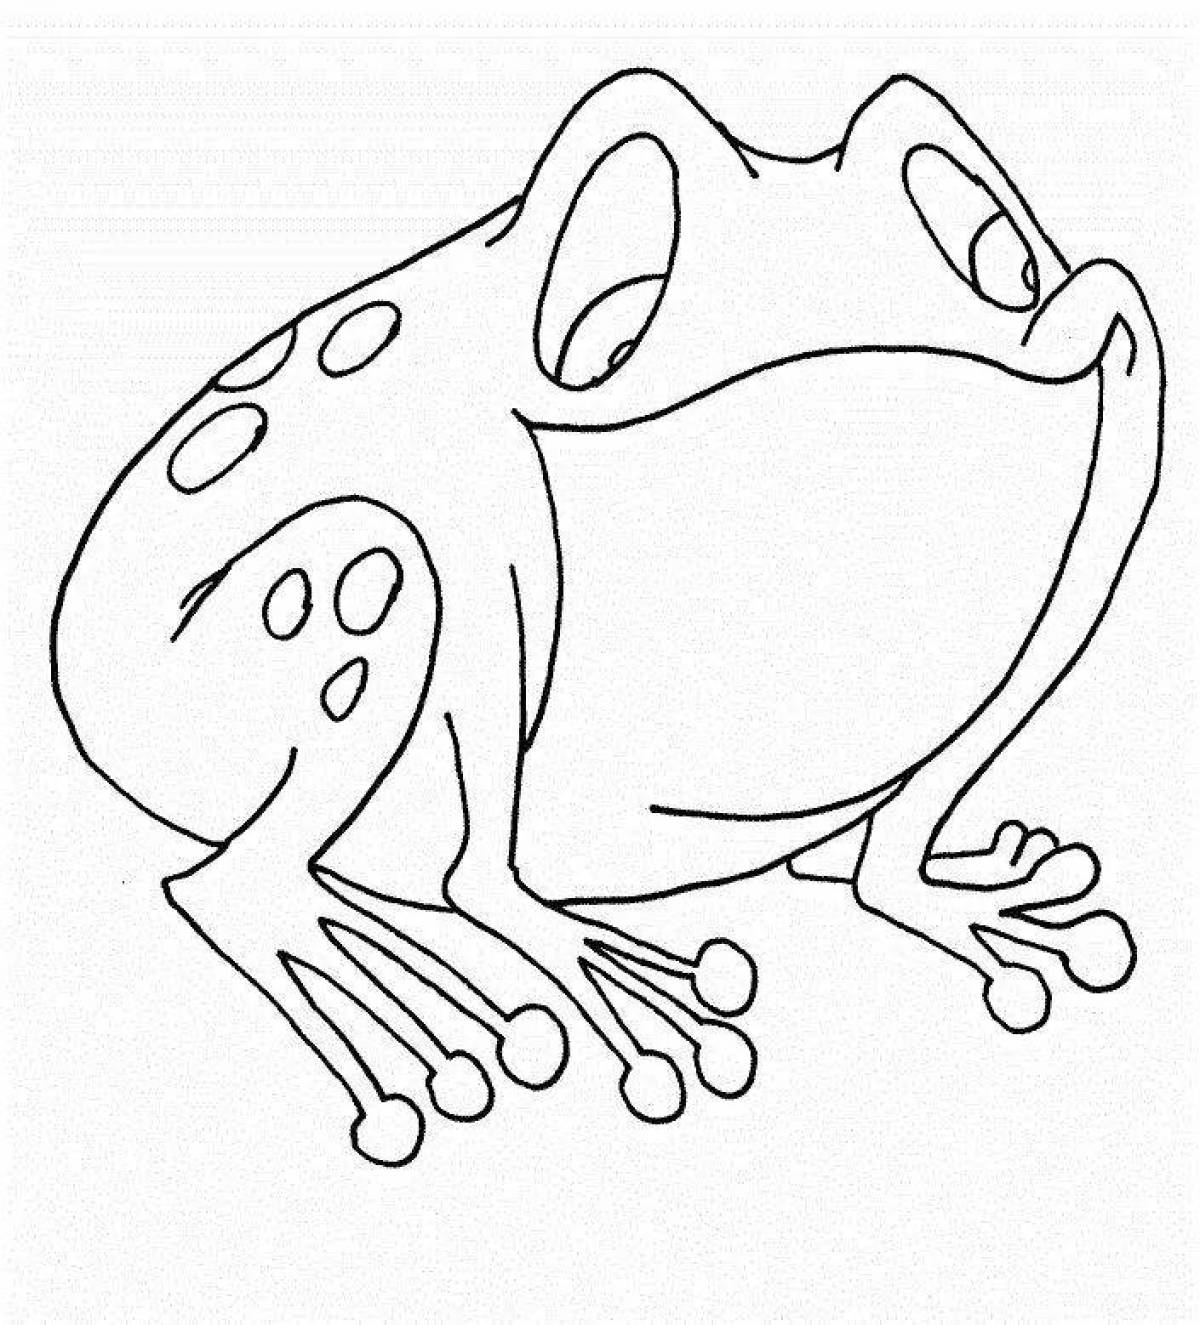 Как нарисовать настоящую лягушку